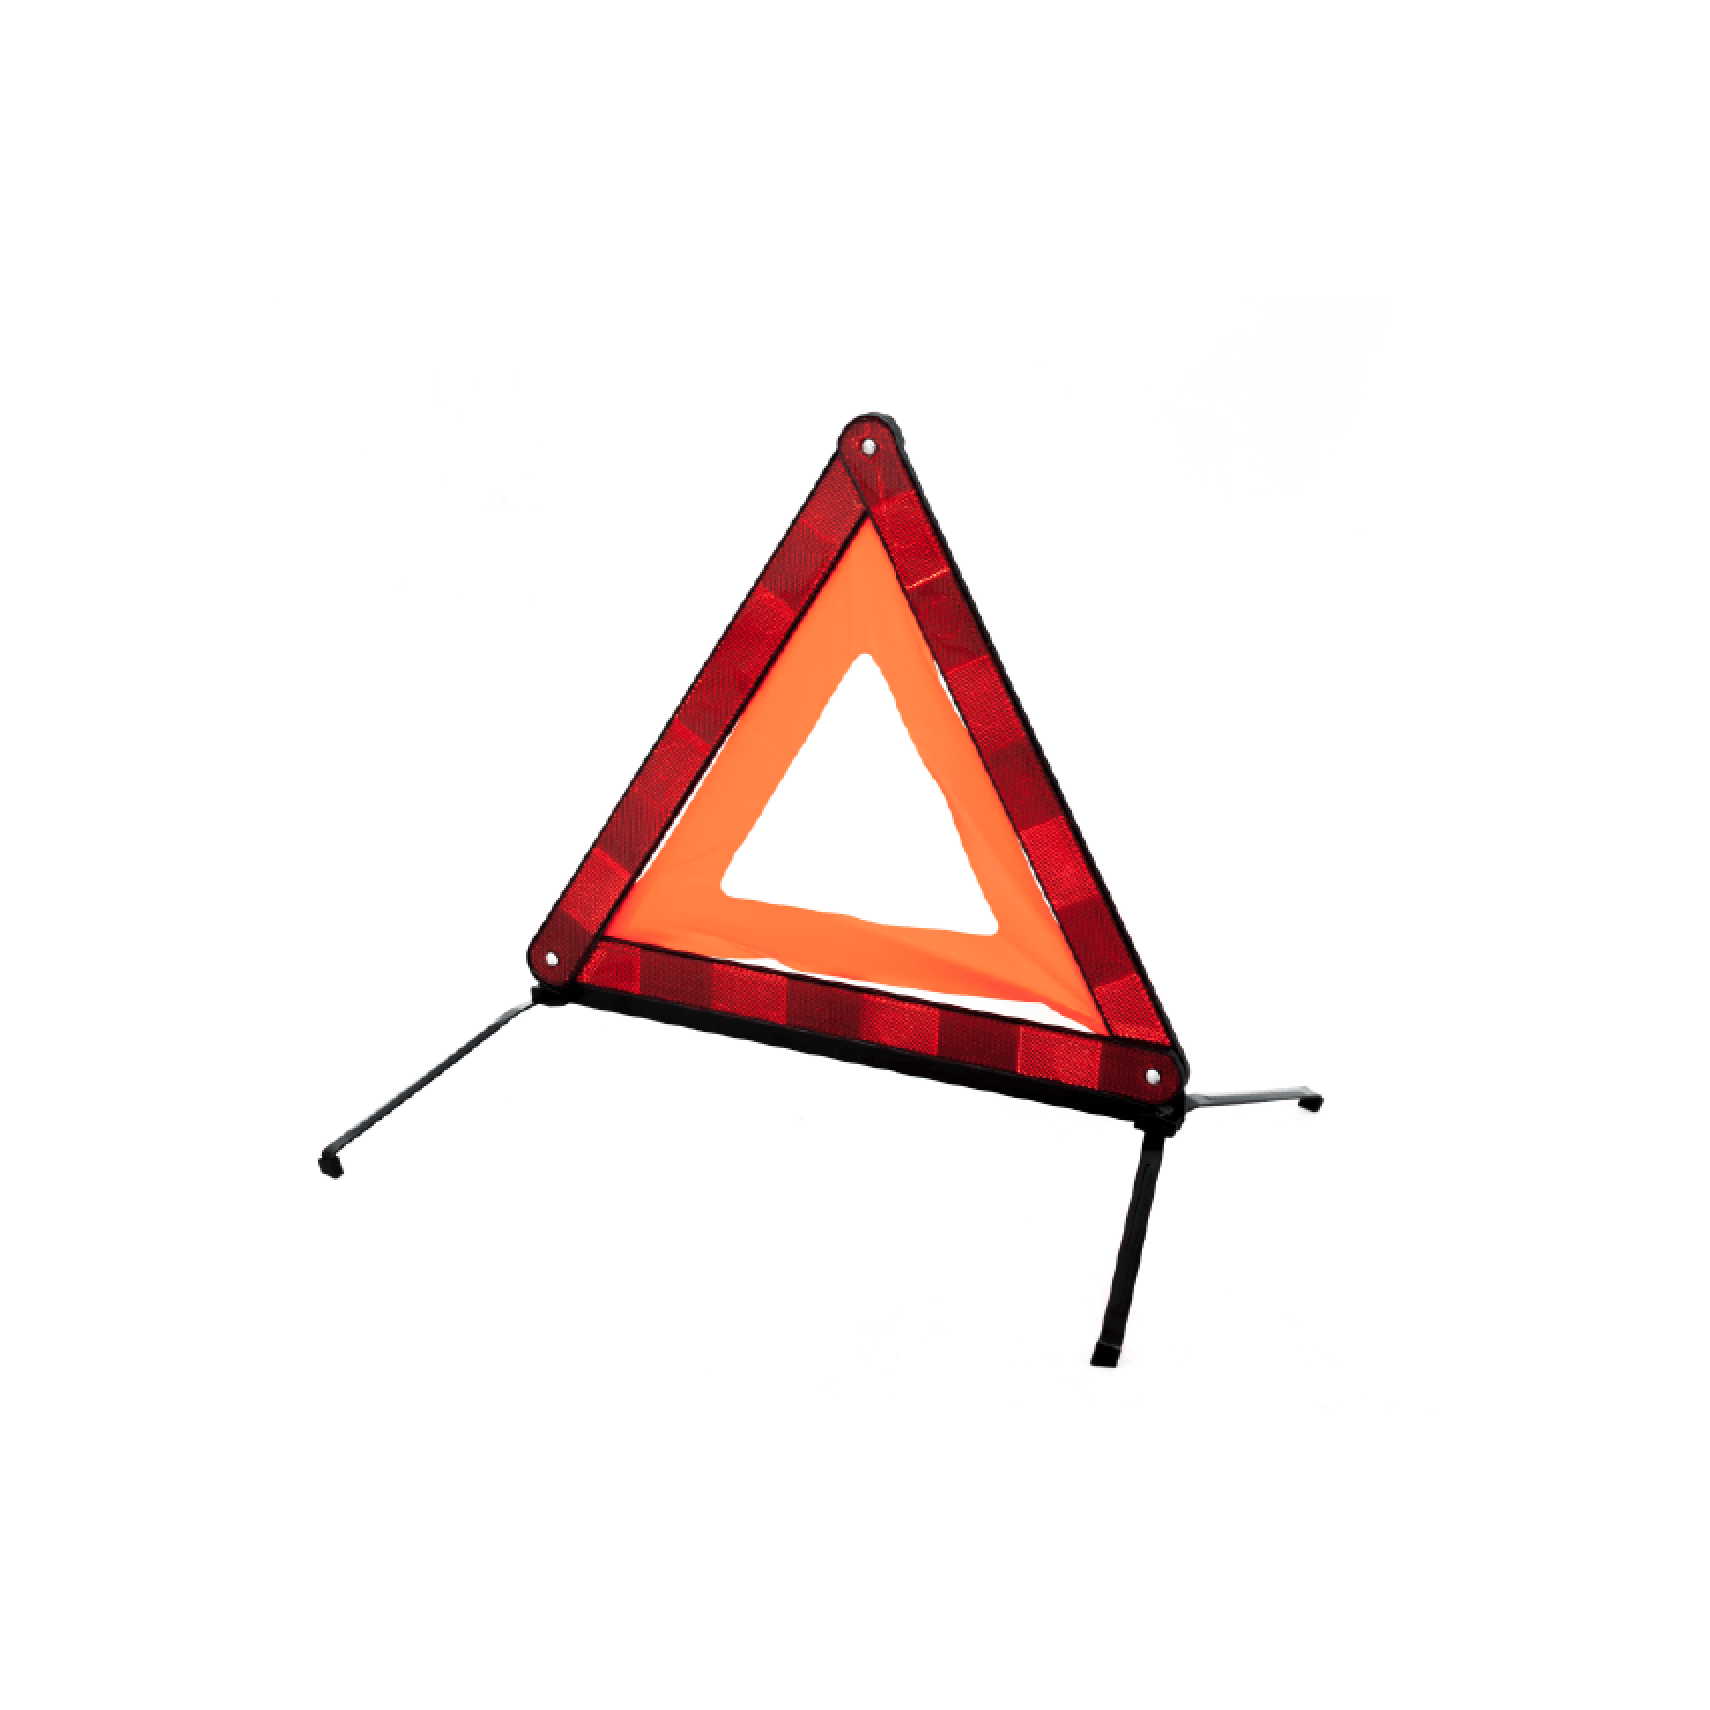 Kit triangle de presignalisation et gilet de securite, Peugeot Accessoires